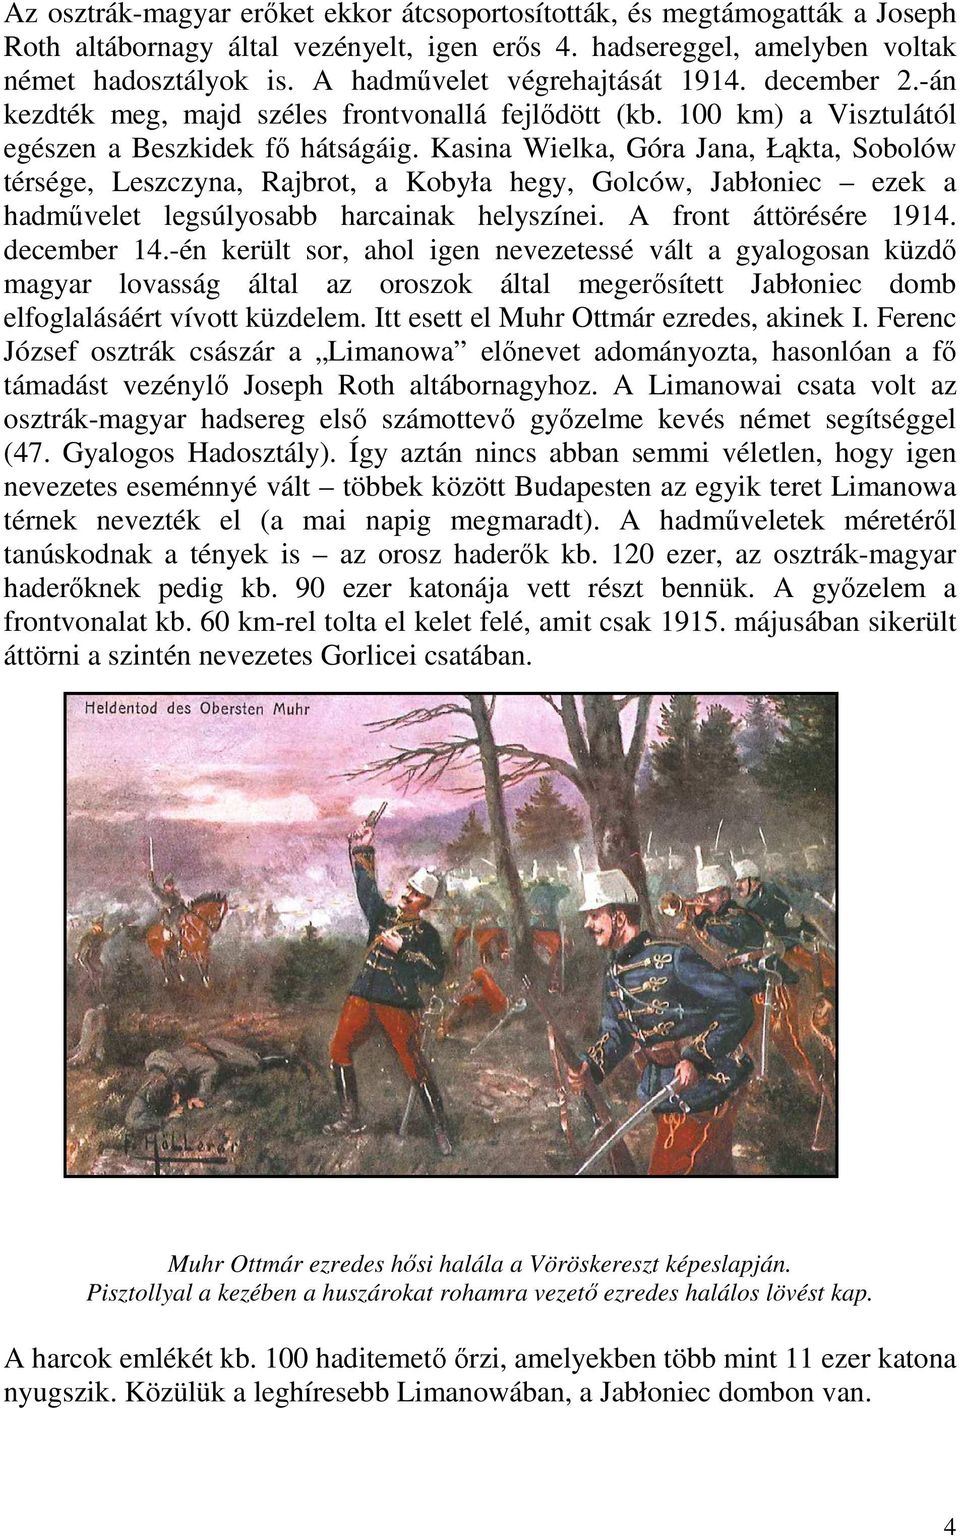 Kasina Wielka, Góra Jana, Łąkta, Sobolów térsége, Leszczyna, Rajbrot, a Kobyła hegy, Golców, Jabłoniec ezek a hadművelet legsúlyosabb harcainak helyszínei. A front áttörésére 1914. december 14.